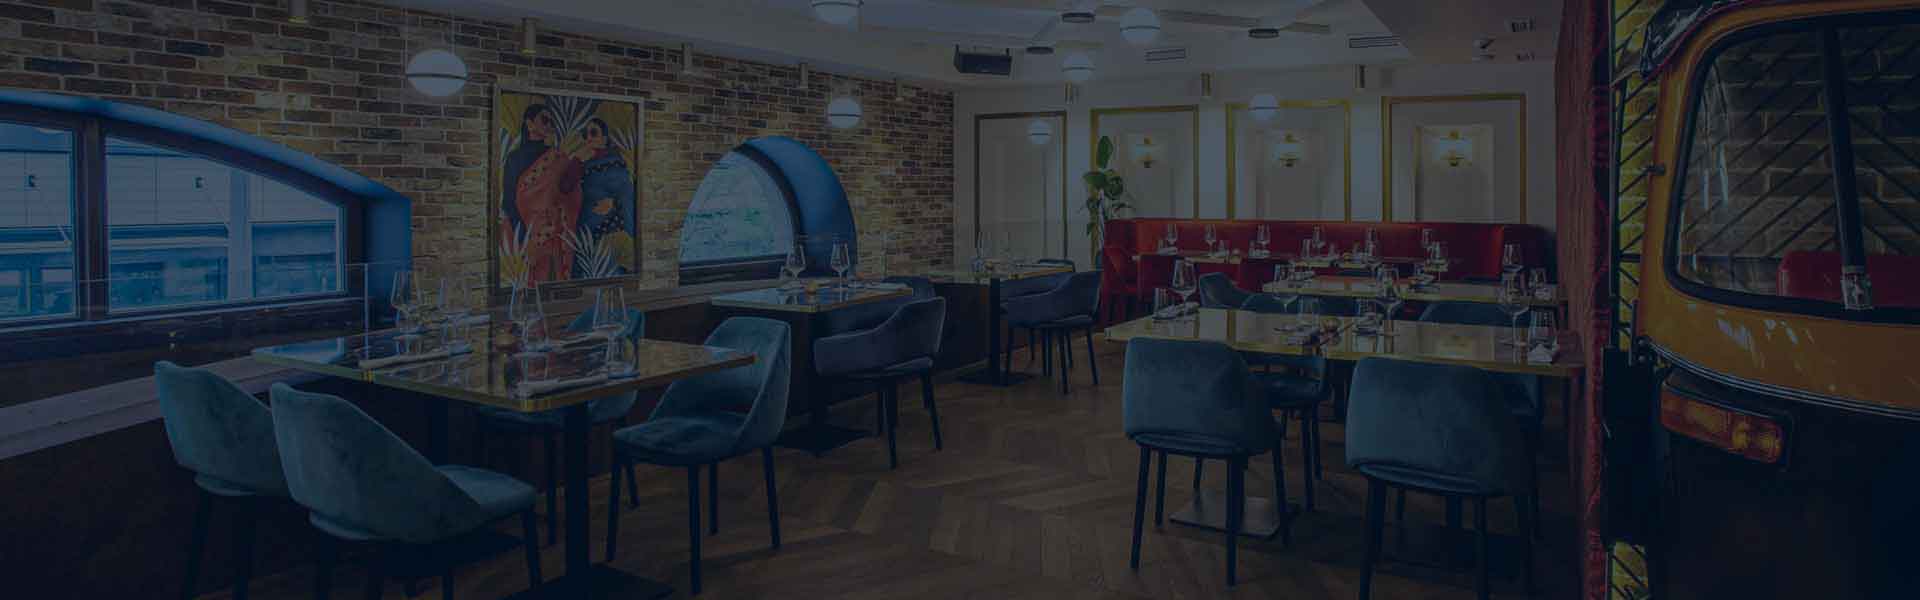 Bombay Budapest indiai étterem asztalfoglalás header